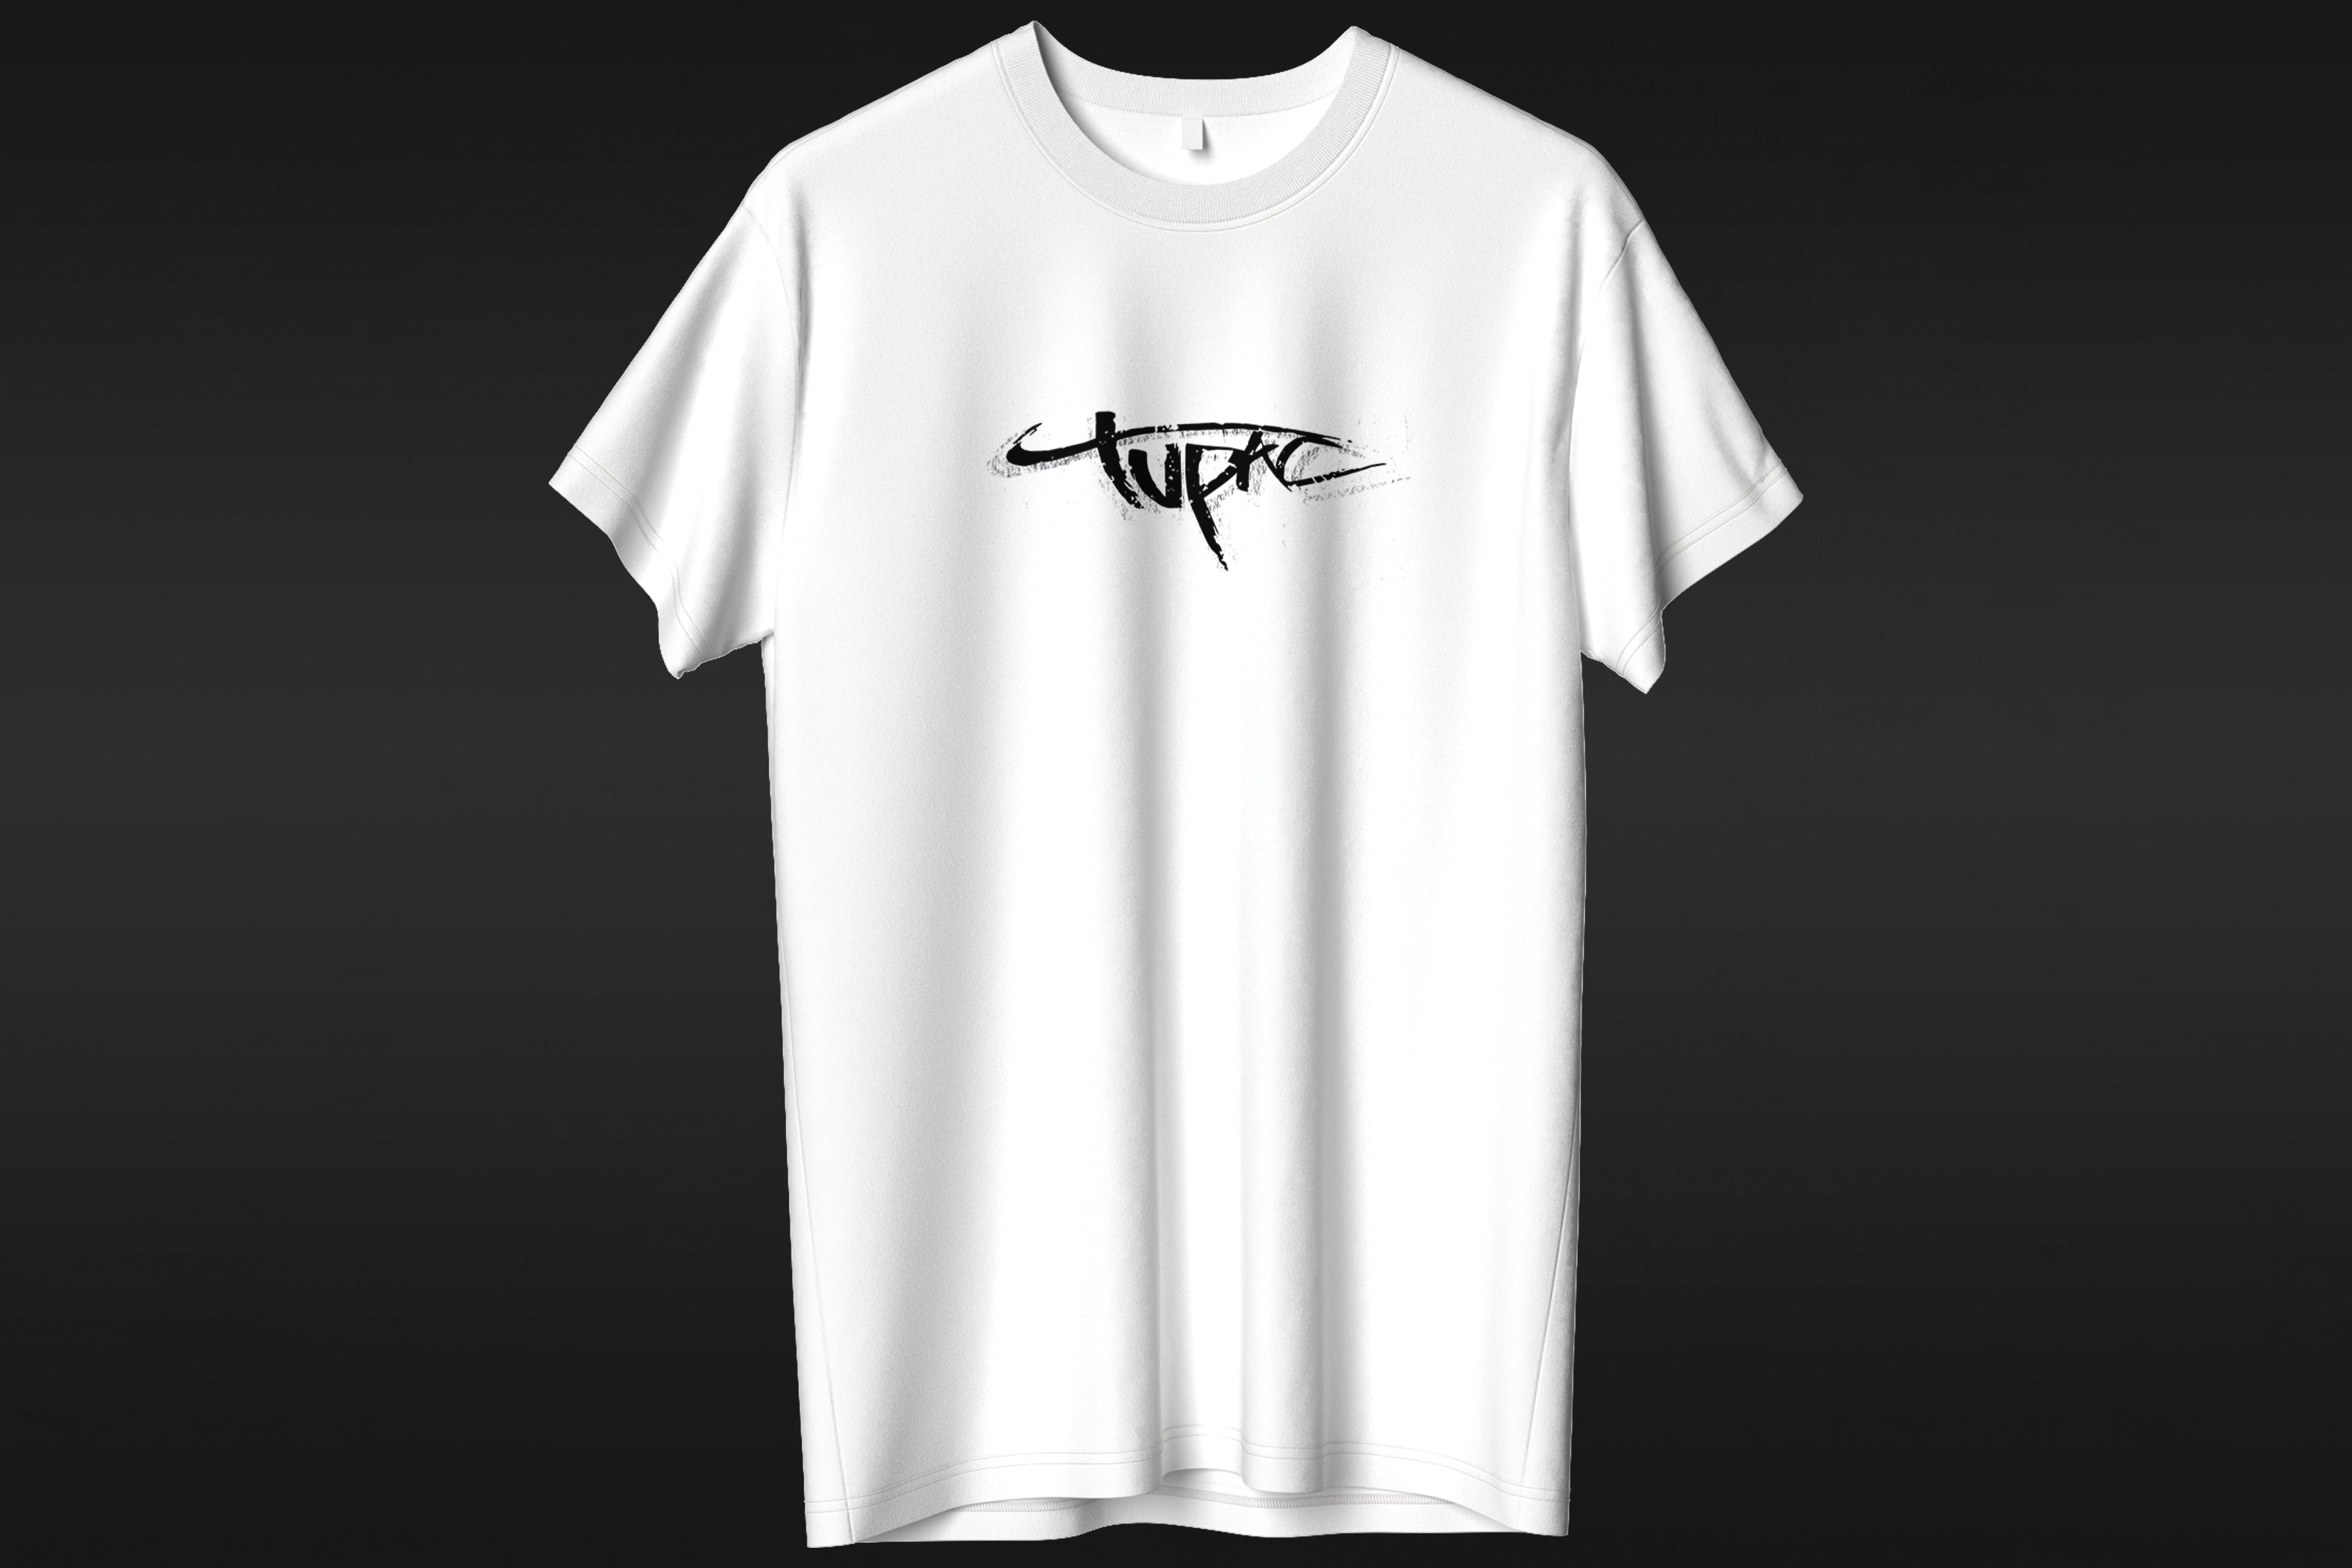 2pac Shakur - T-shirt